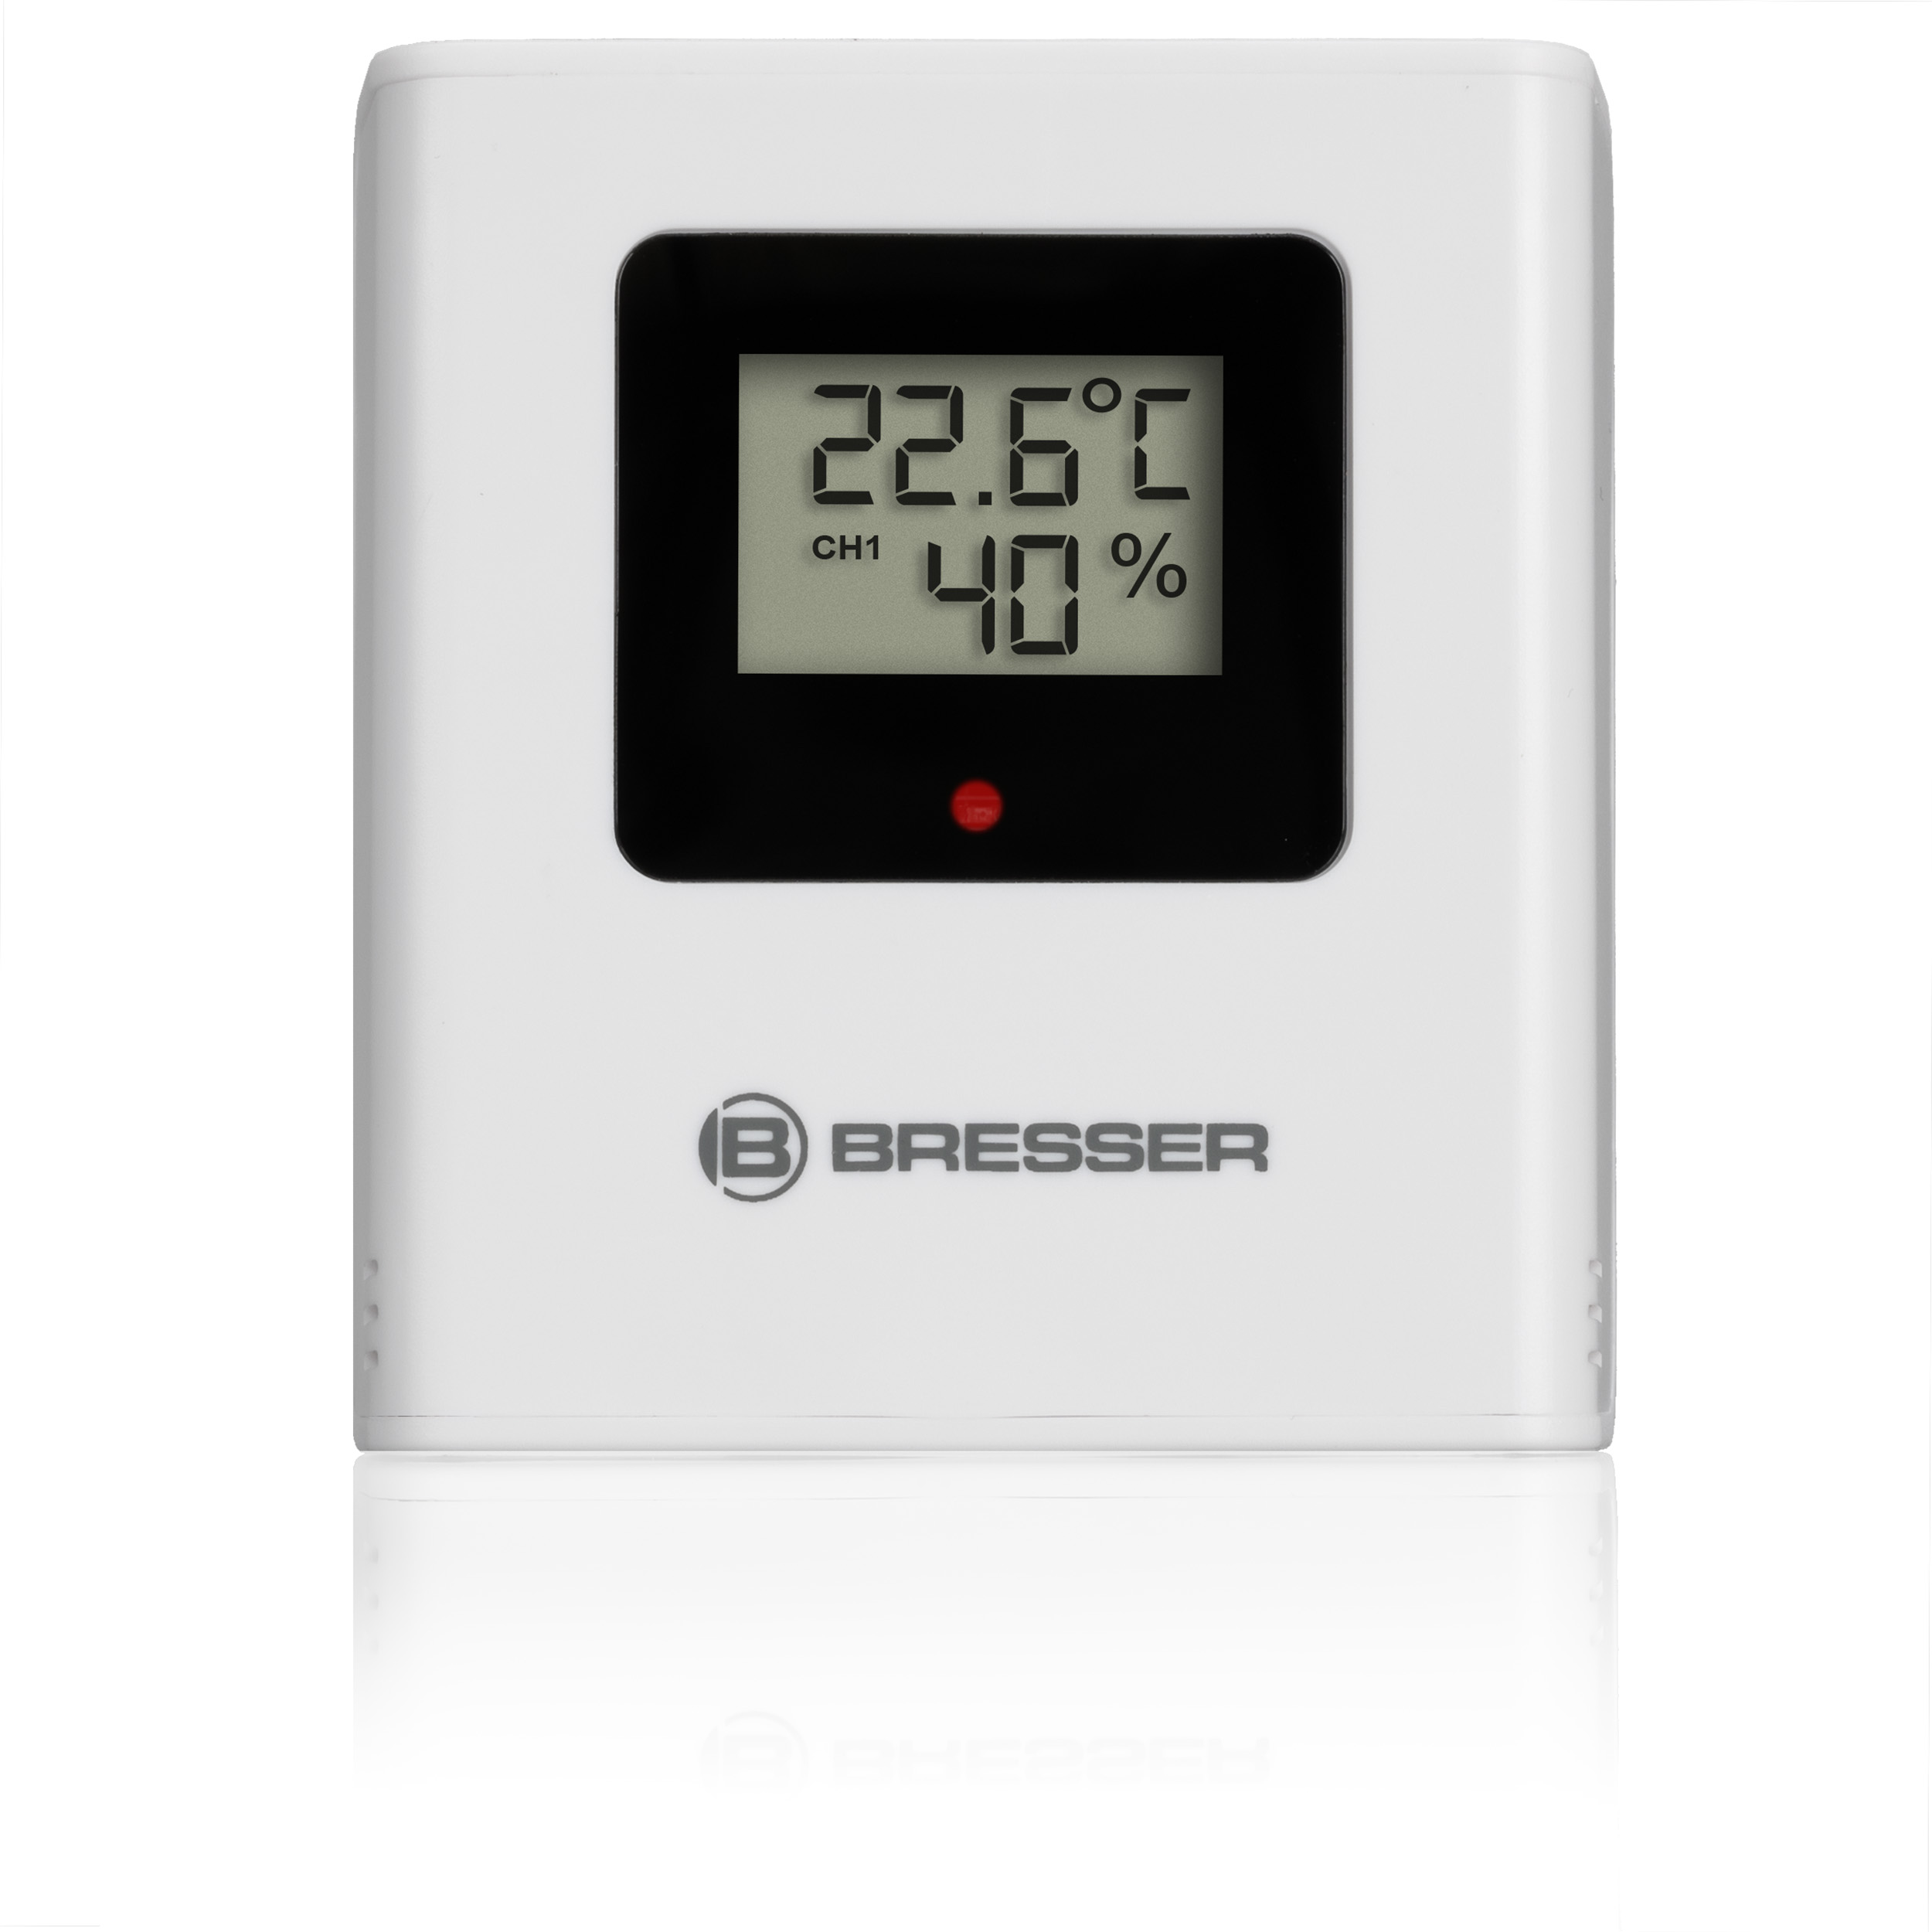 Reloj despertador digital simple y fácil de usar, pequeño compacto,  atenuación automática por la noche y 6 ajustes de brillo manuales,  alimentación de